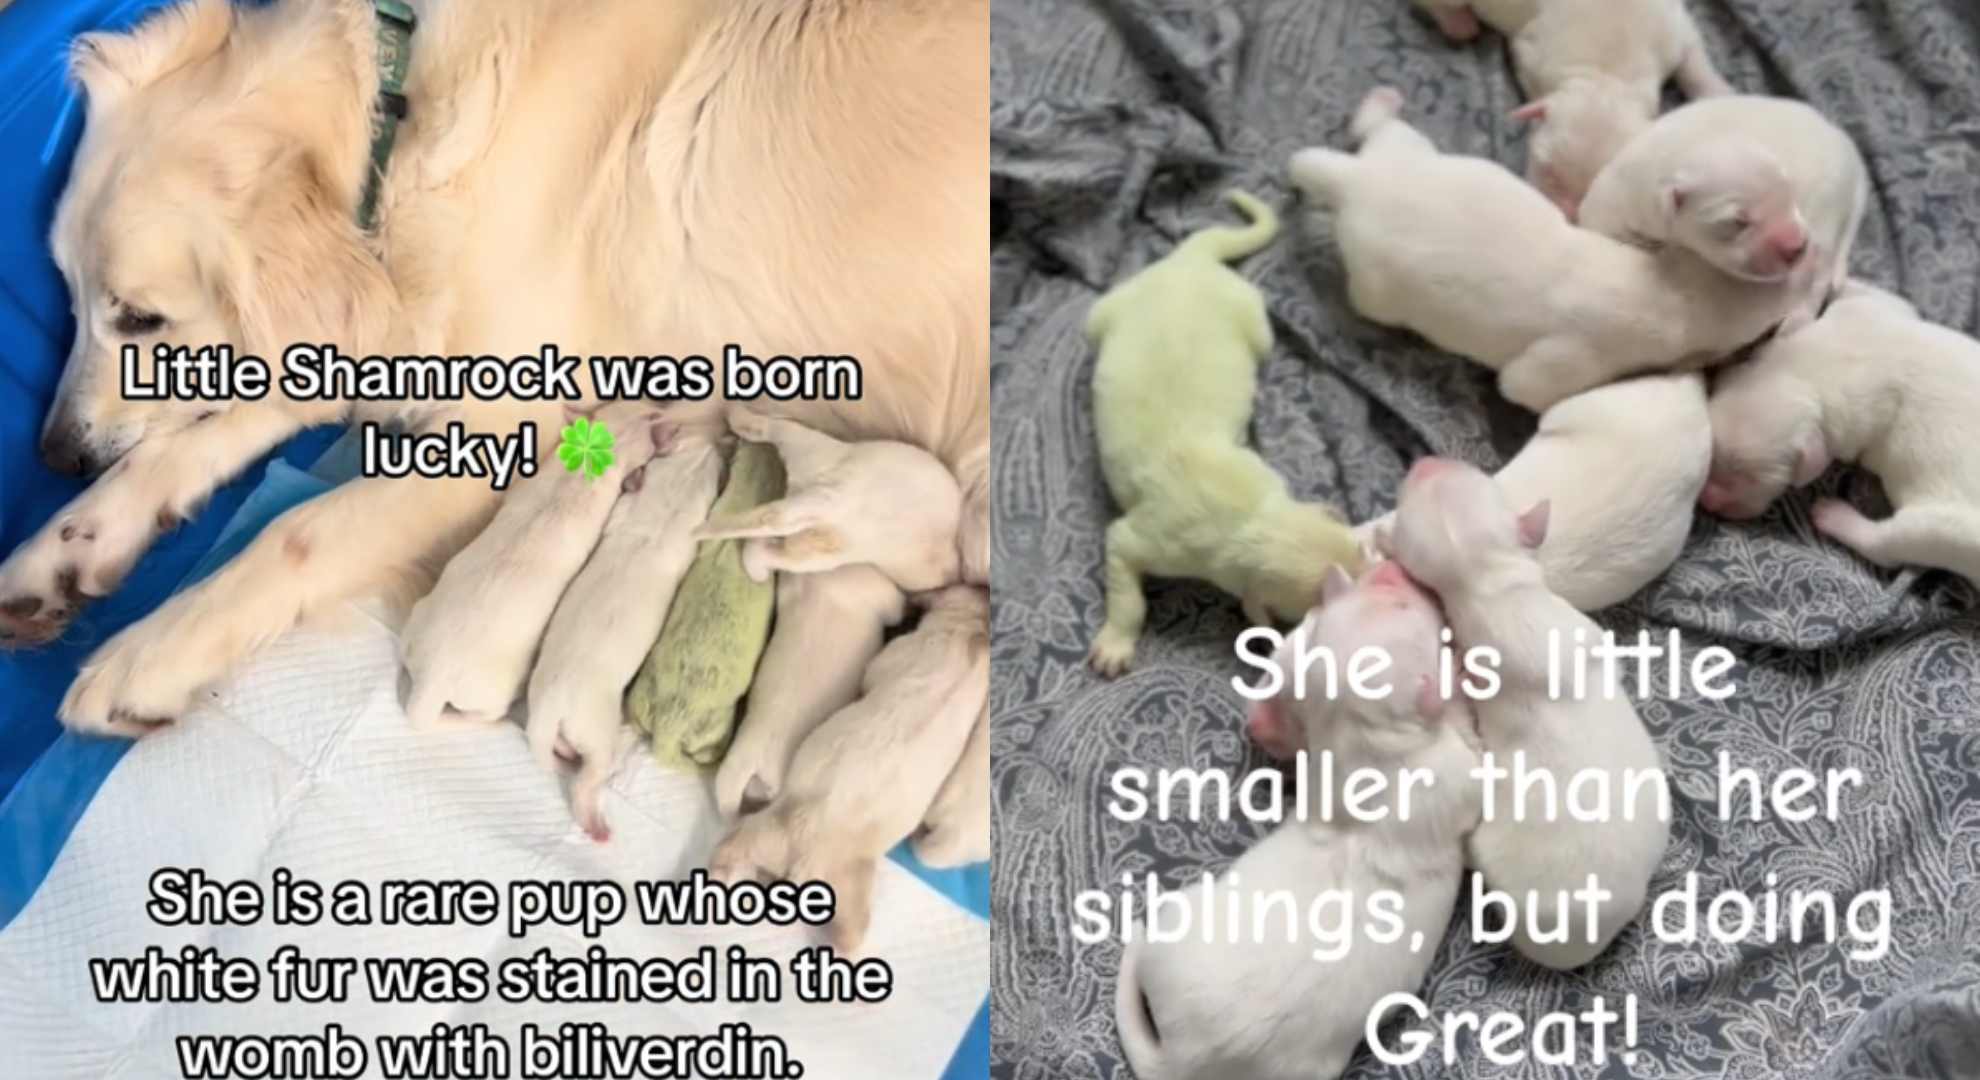 黃金獵犬生寶寶驚見1隻是綠的狂吸680萬人觀看